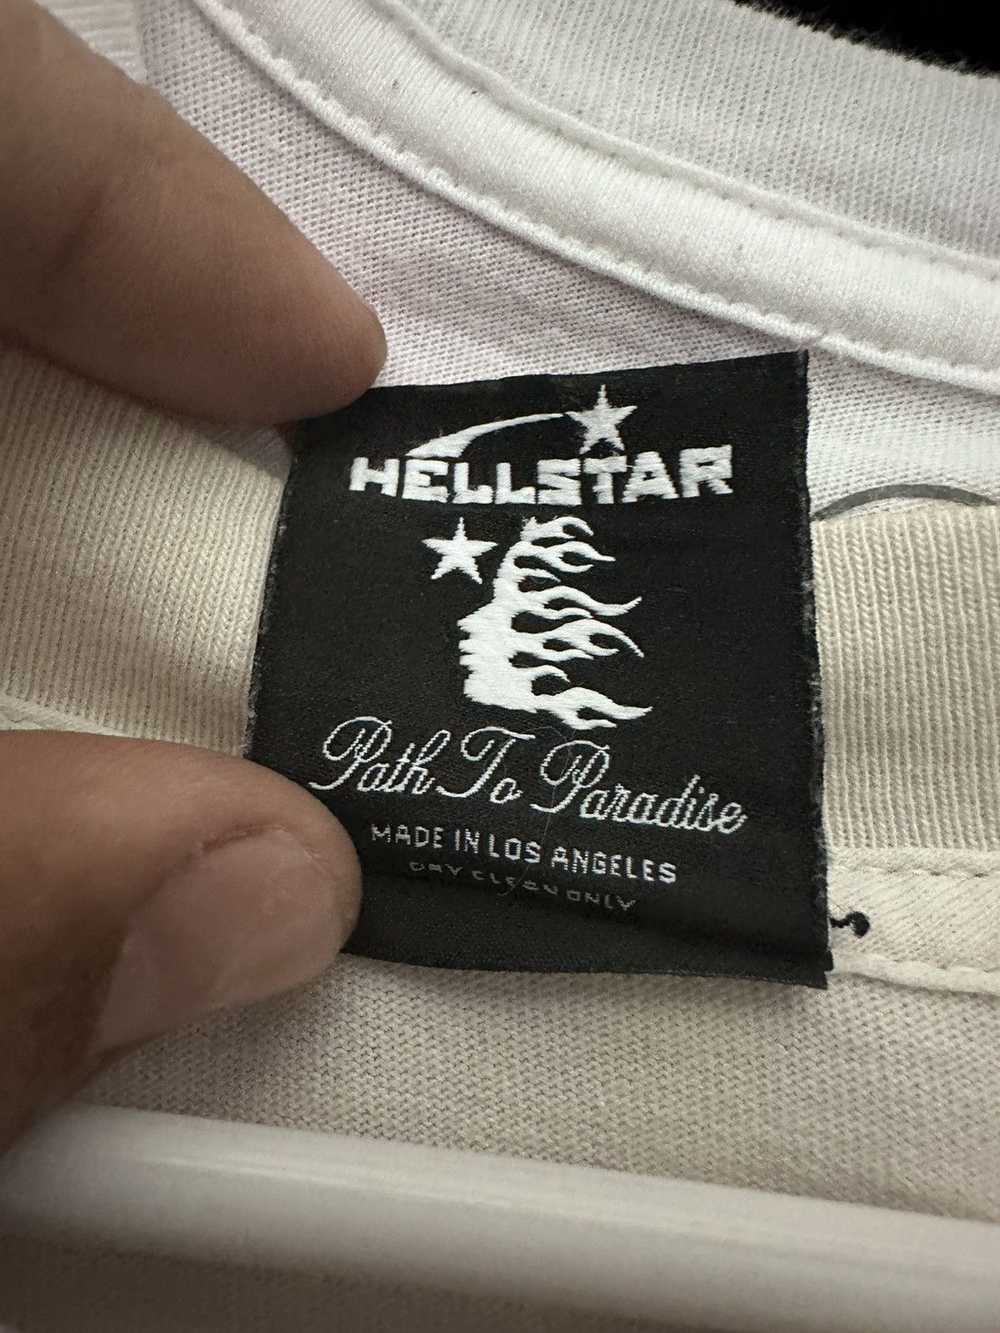 HELLSTAR Hellstar Records T- shirt - image 4